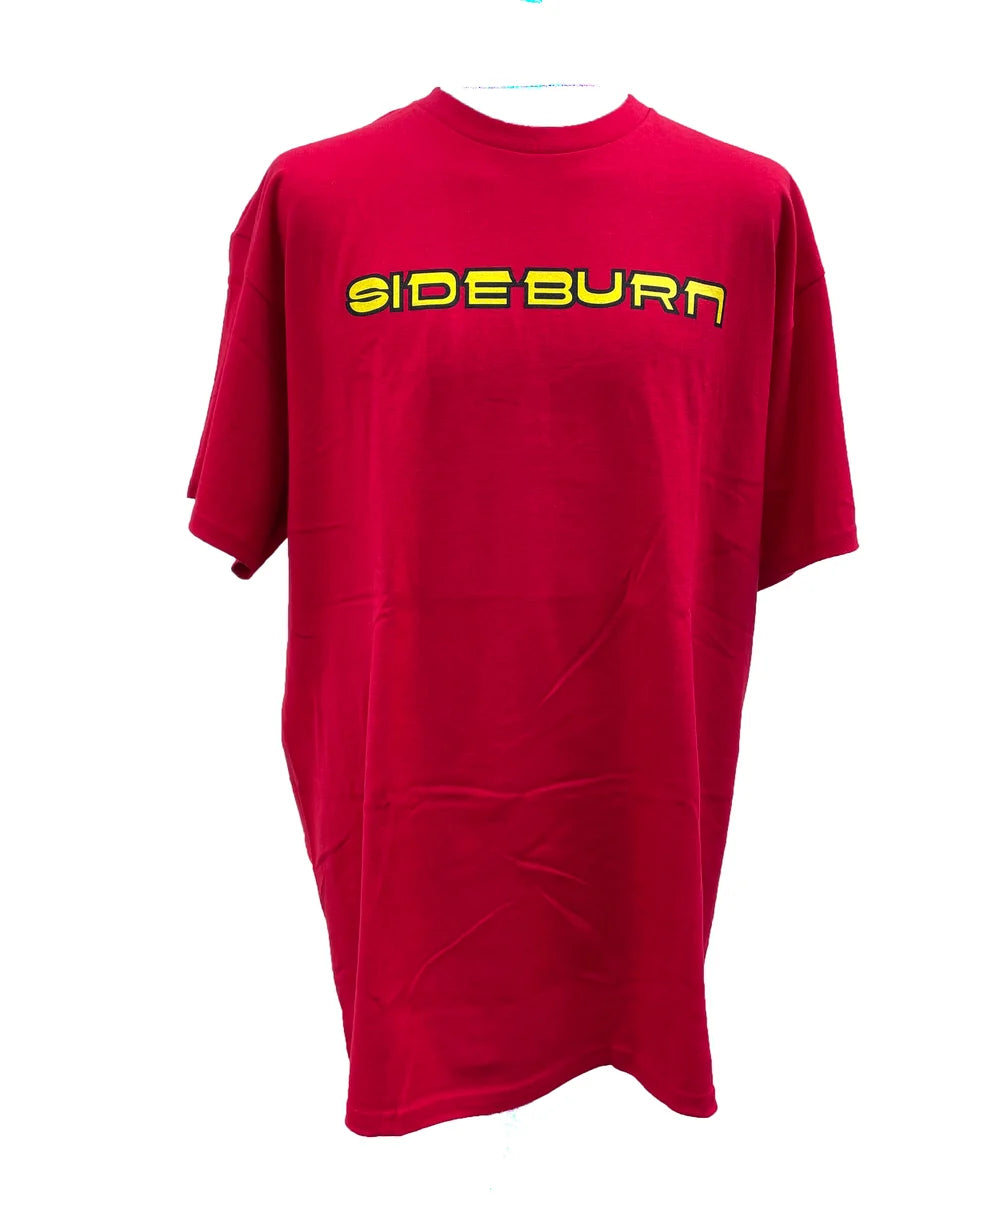 Sideburn Spanish T-Shirt